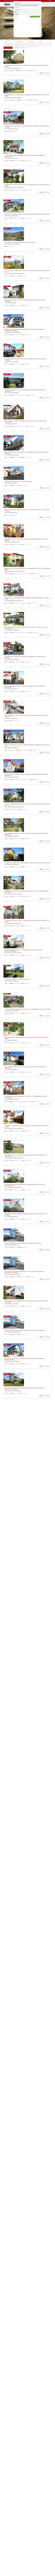 www.schaich-immobilien.de